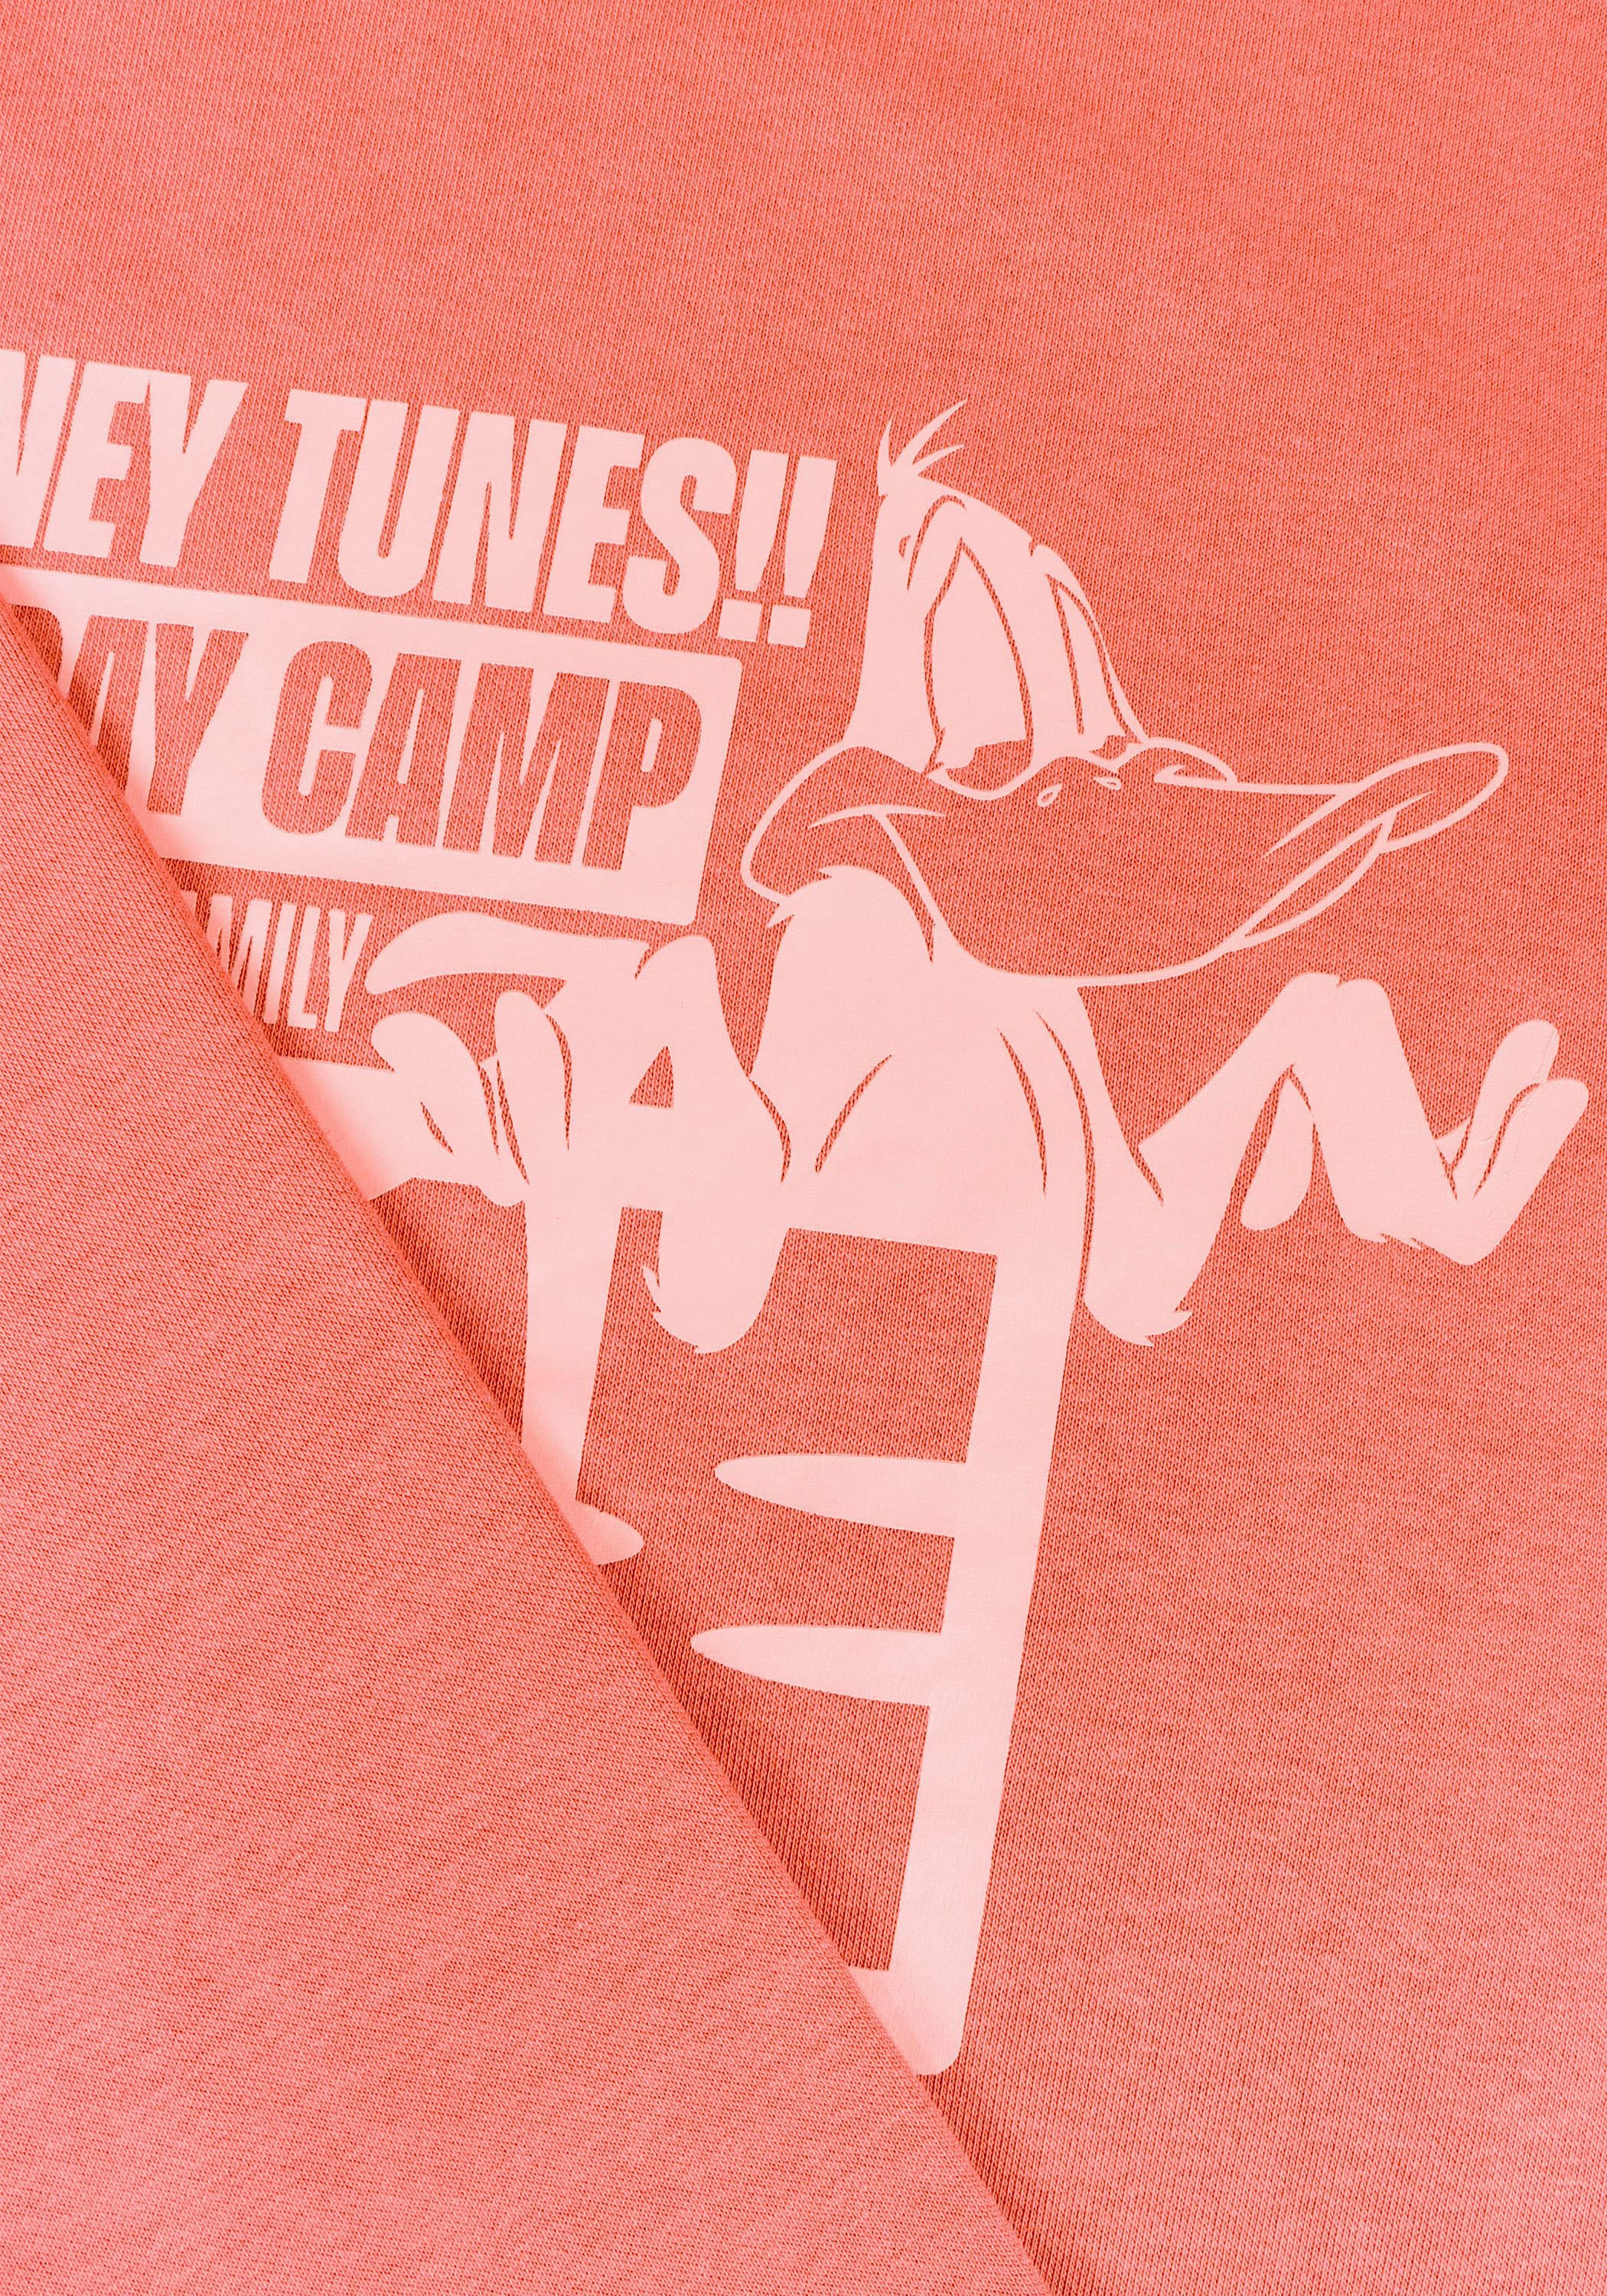 Capelli New York Hoodie, Holiday Camp - Daffy Duck Lizenz Design auf Vorder und Rückseite.